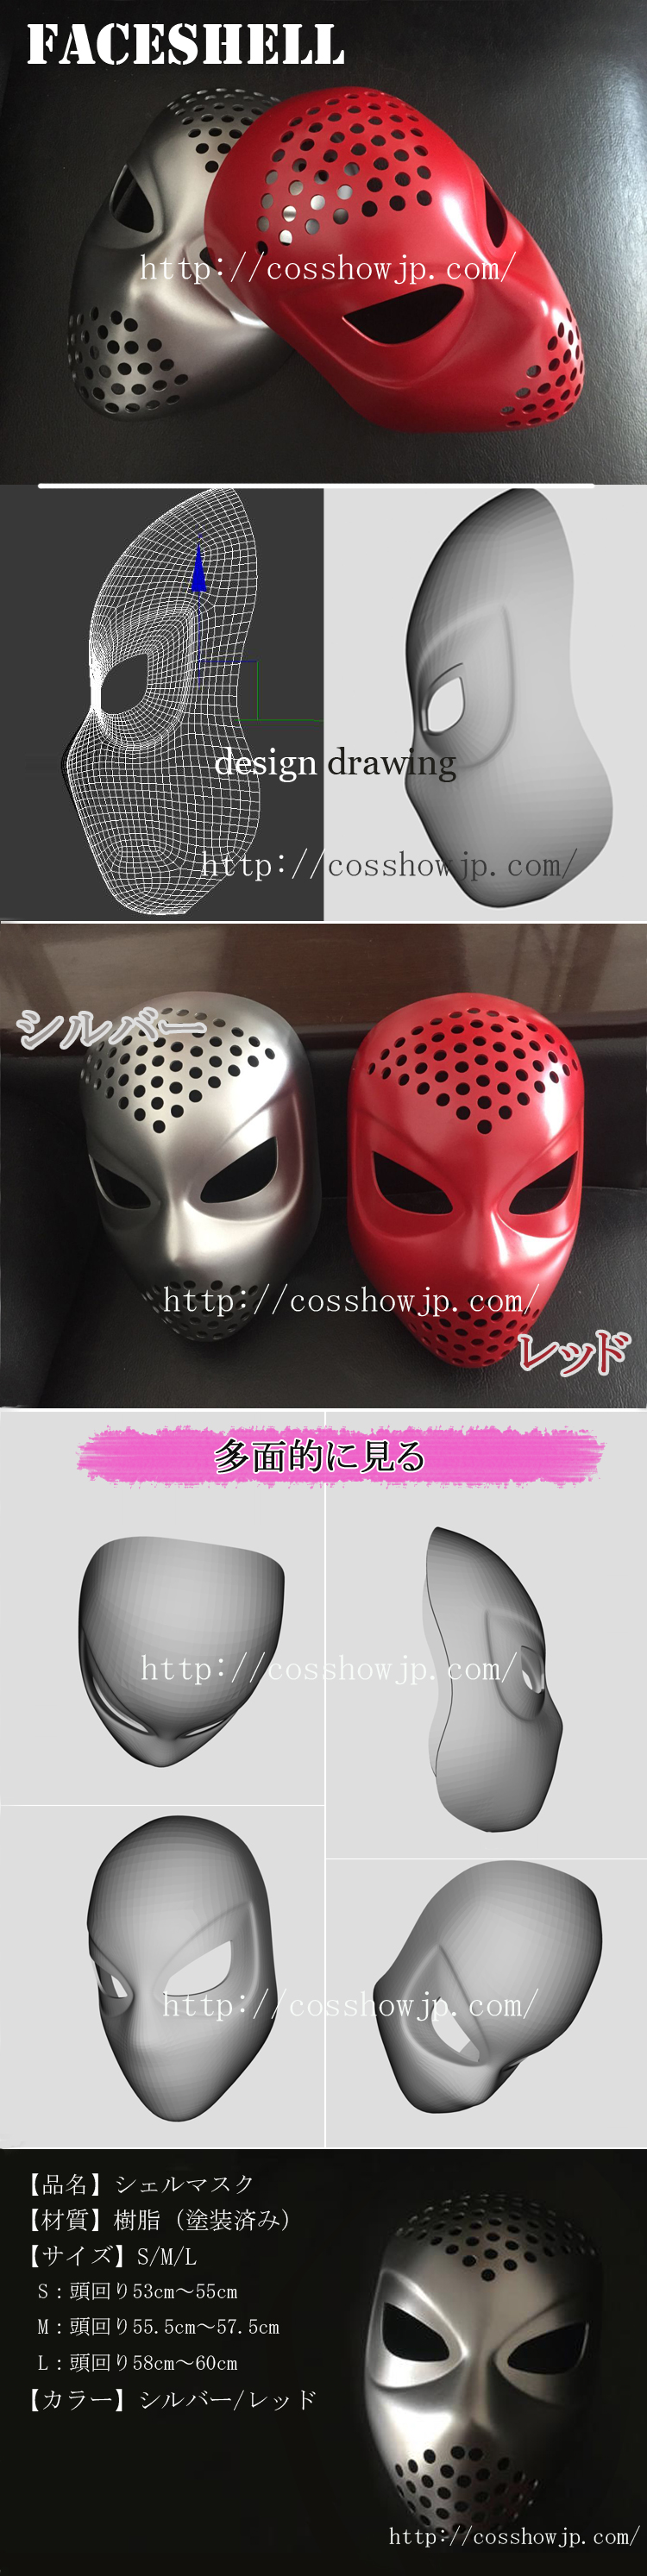 ★【faceshell】フェスシェル cosplay